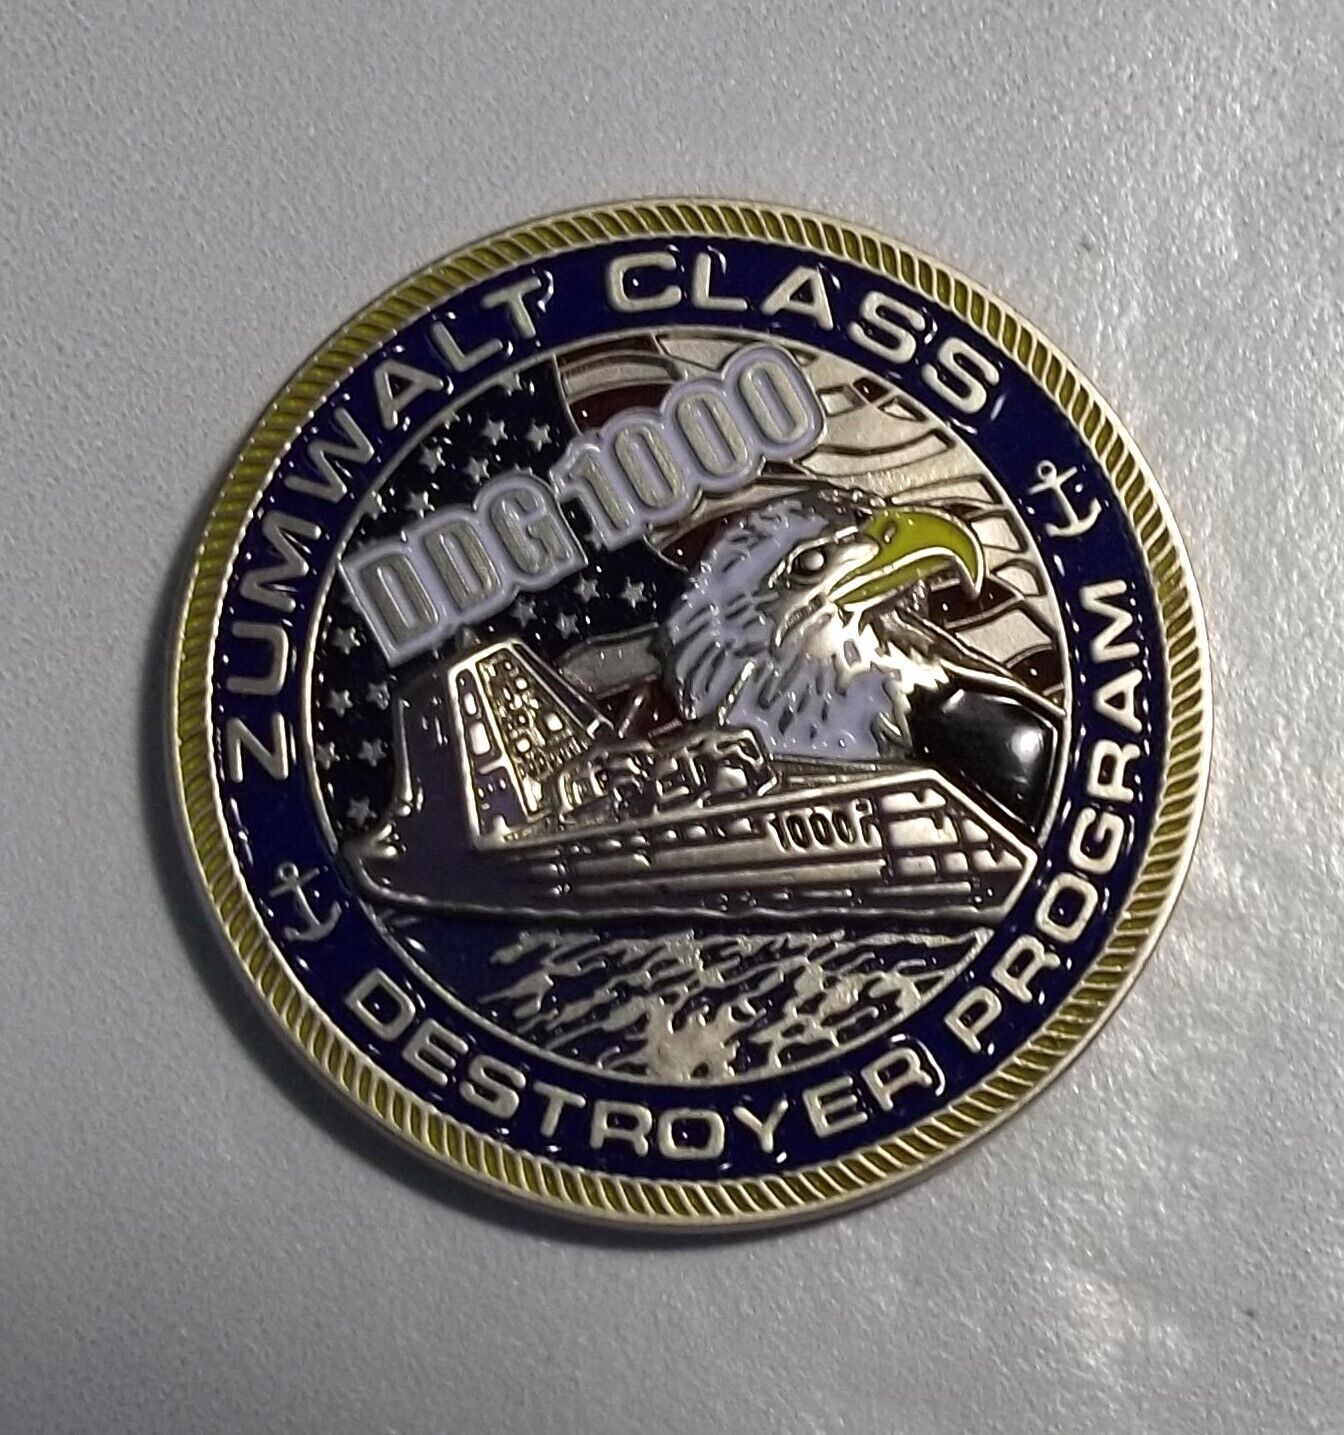 “DDG 1000 - Zumwalt Class Destroyer Program” Challenge Coin